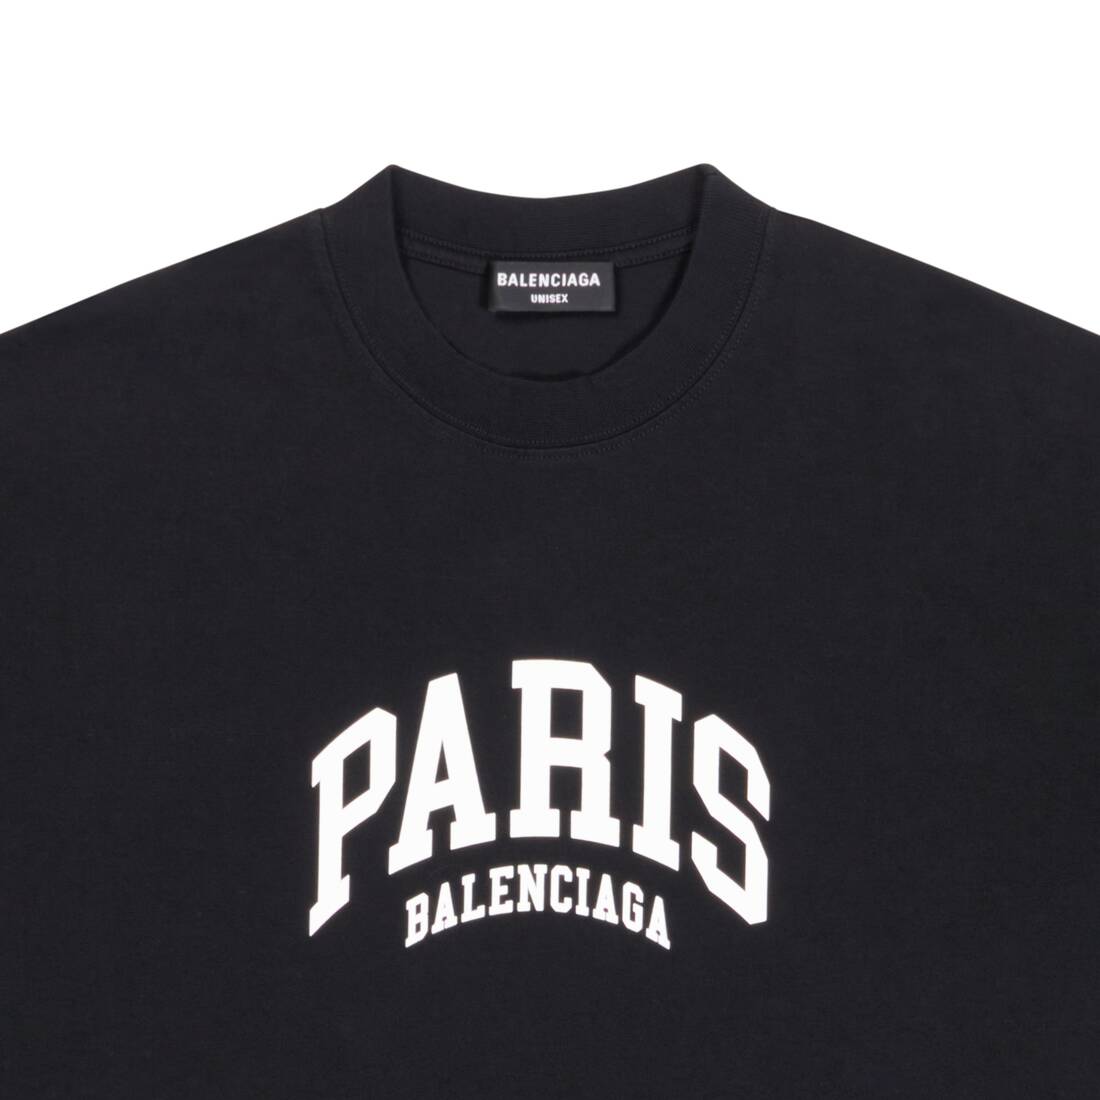 Balenciaga Paris Logo TShirt White  Deal Hub